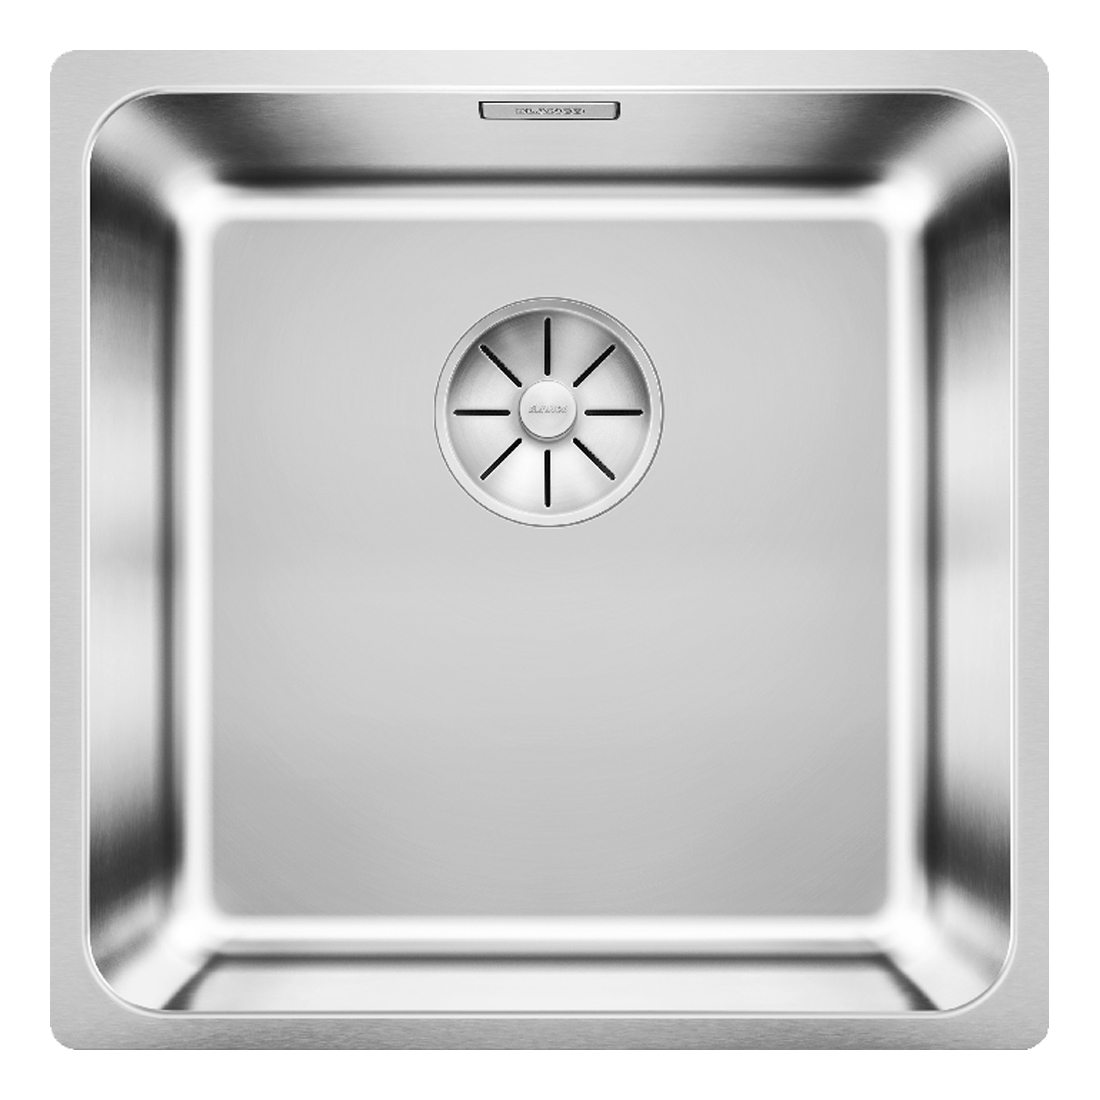 Кухонная мойка Blanco Solis 400-IF полированная сталь кухонная мойка franke 122 0689 805 нержавеющая сталь